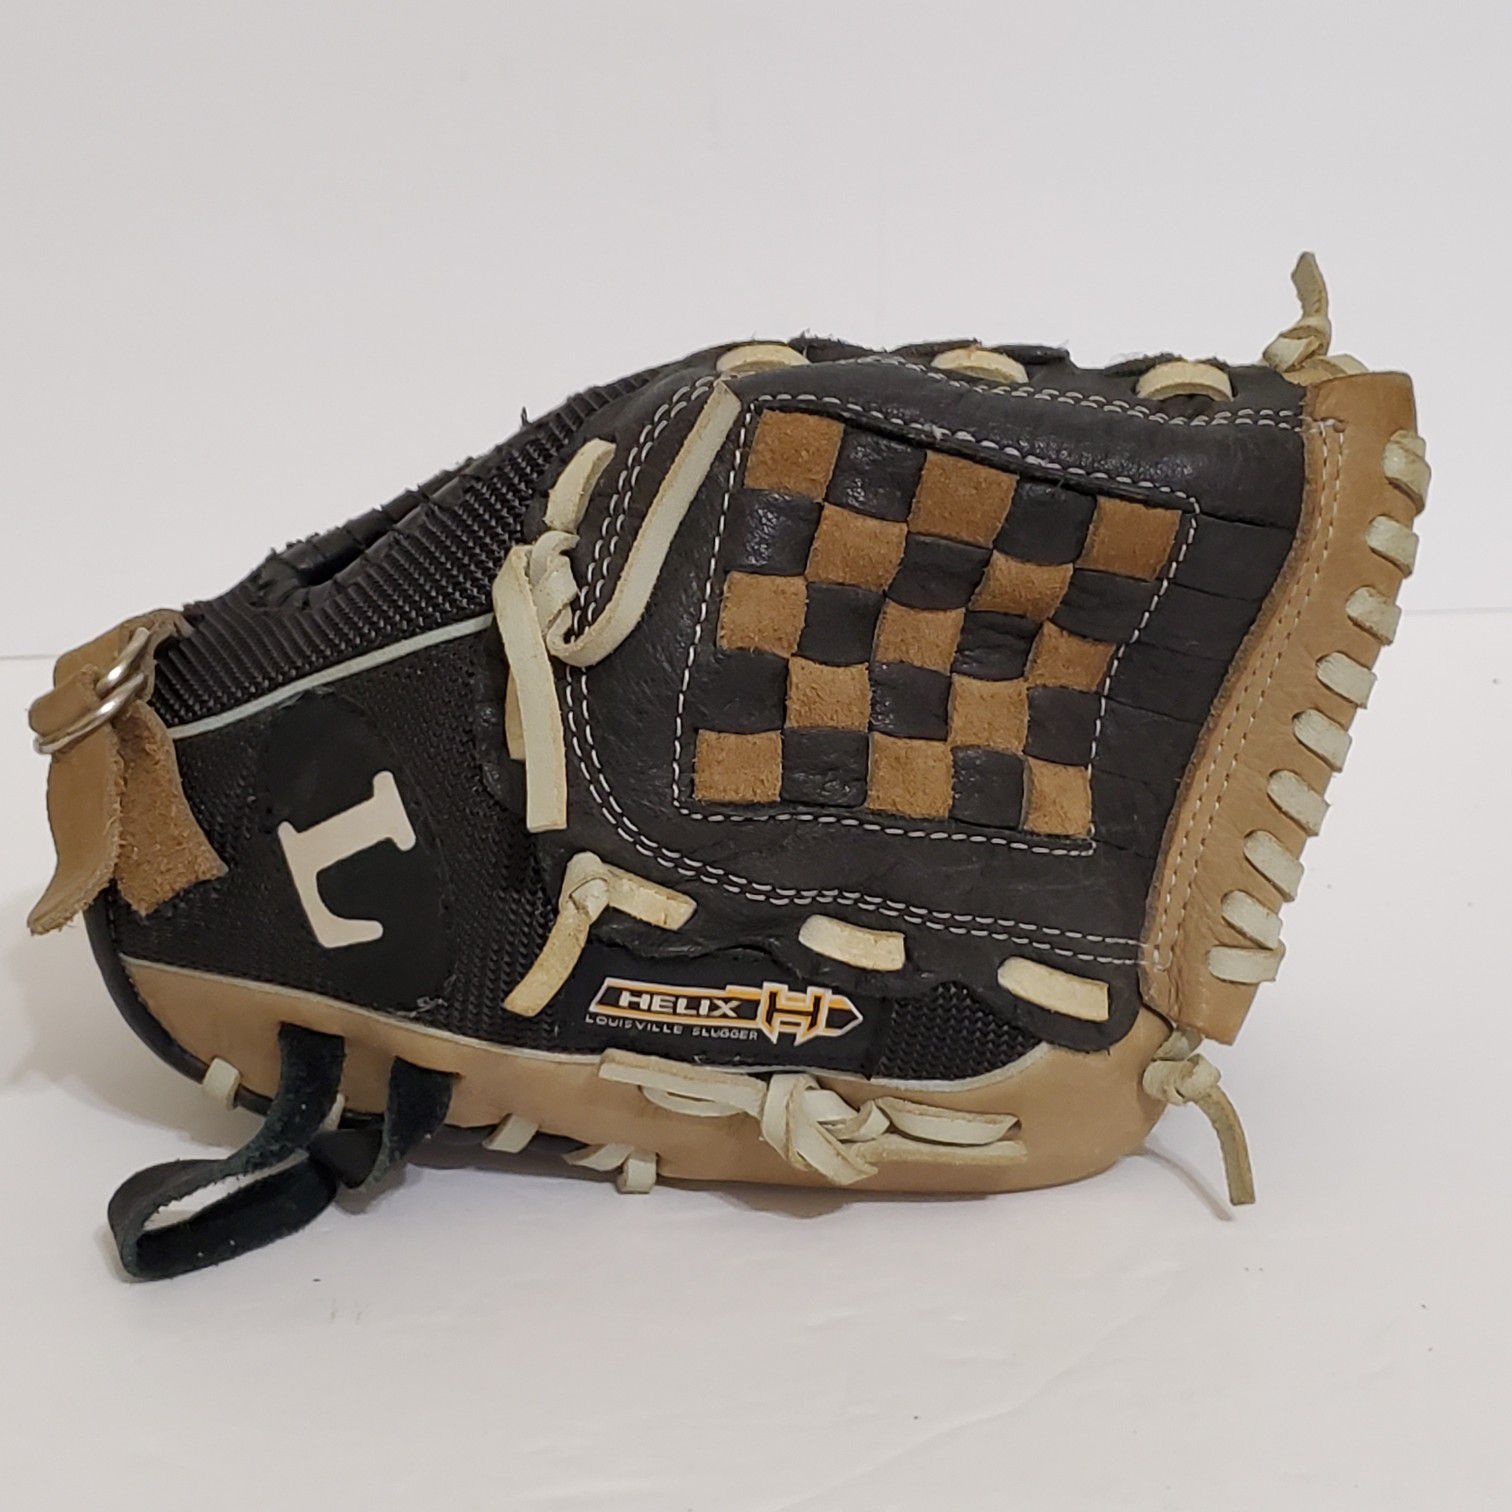 TPX HELIX HXY1050 Louisville Slugger Baseball Glove Size 10.5 Tan & Black